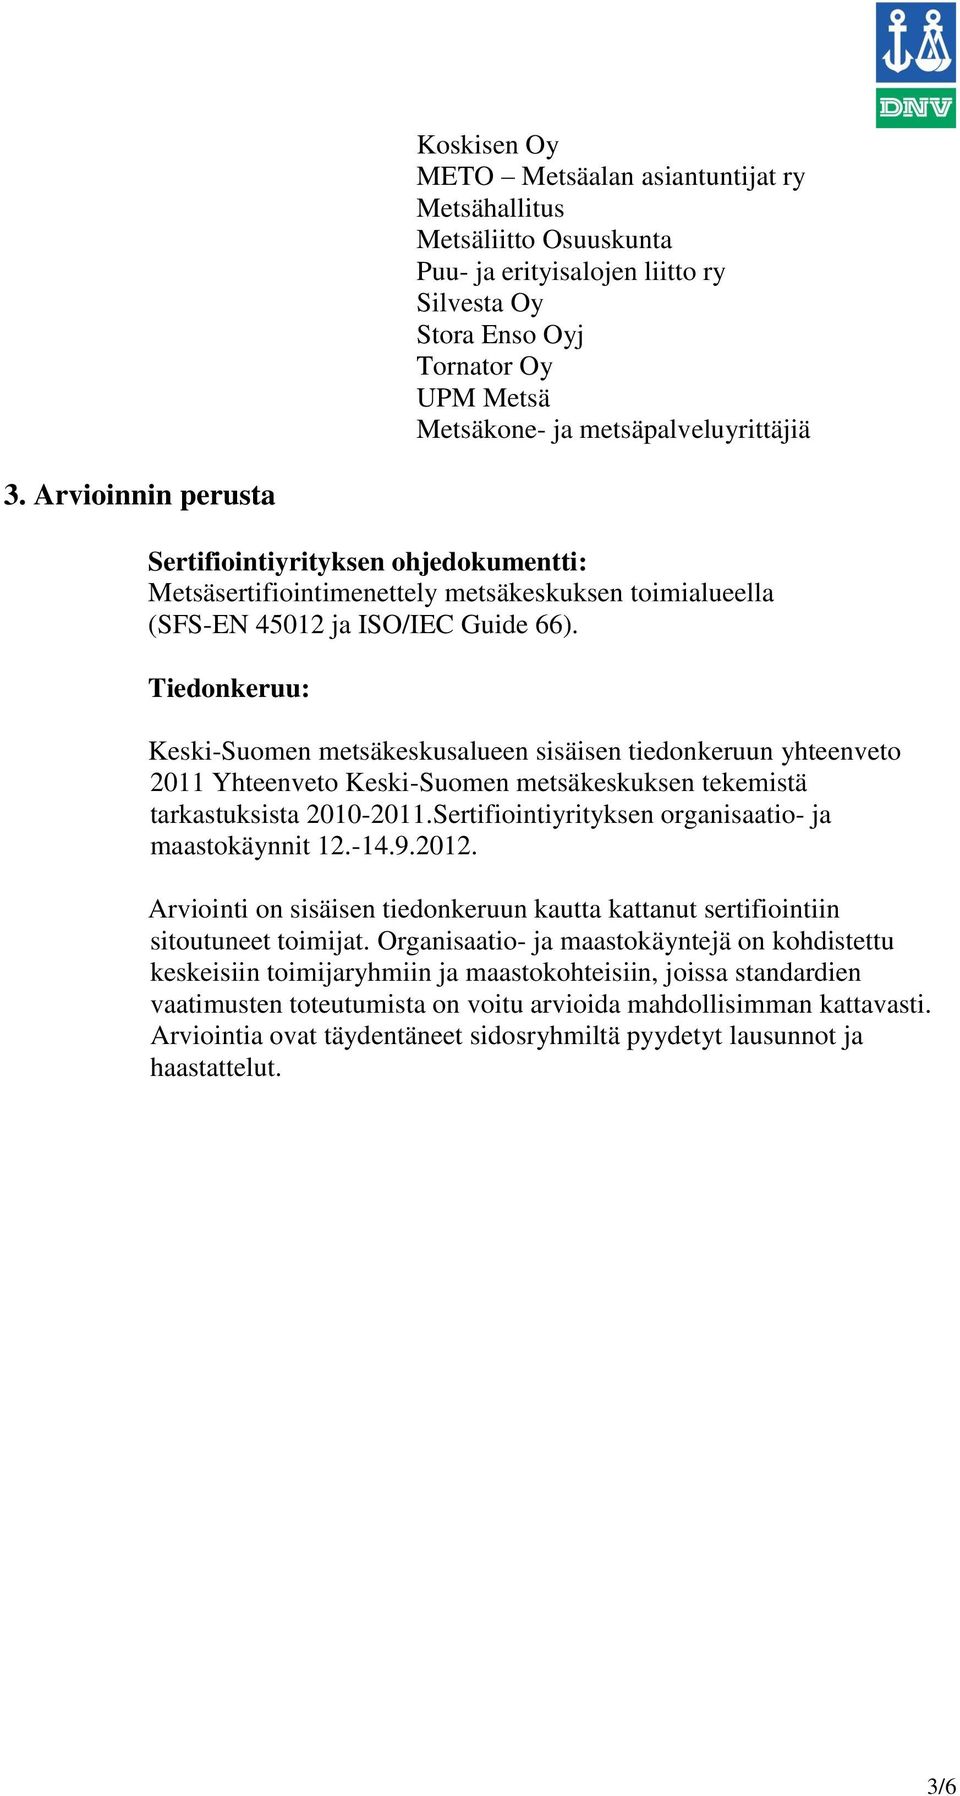 Tiedonkeruu: Keski-Suomen metsäkeskusalueen sisäisen tiedonkeruun yhteenveto 2011 Yhteenveto Keski-Suomen metsäkeskuksen tekemistä tarkastuksista 2010-2011.